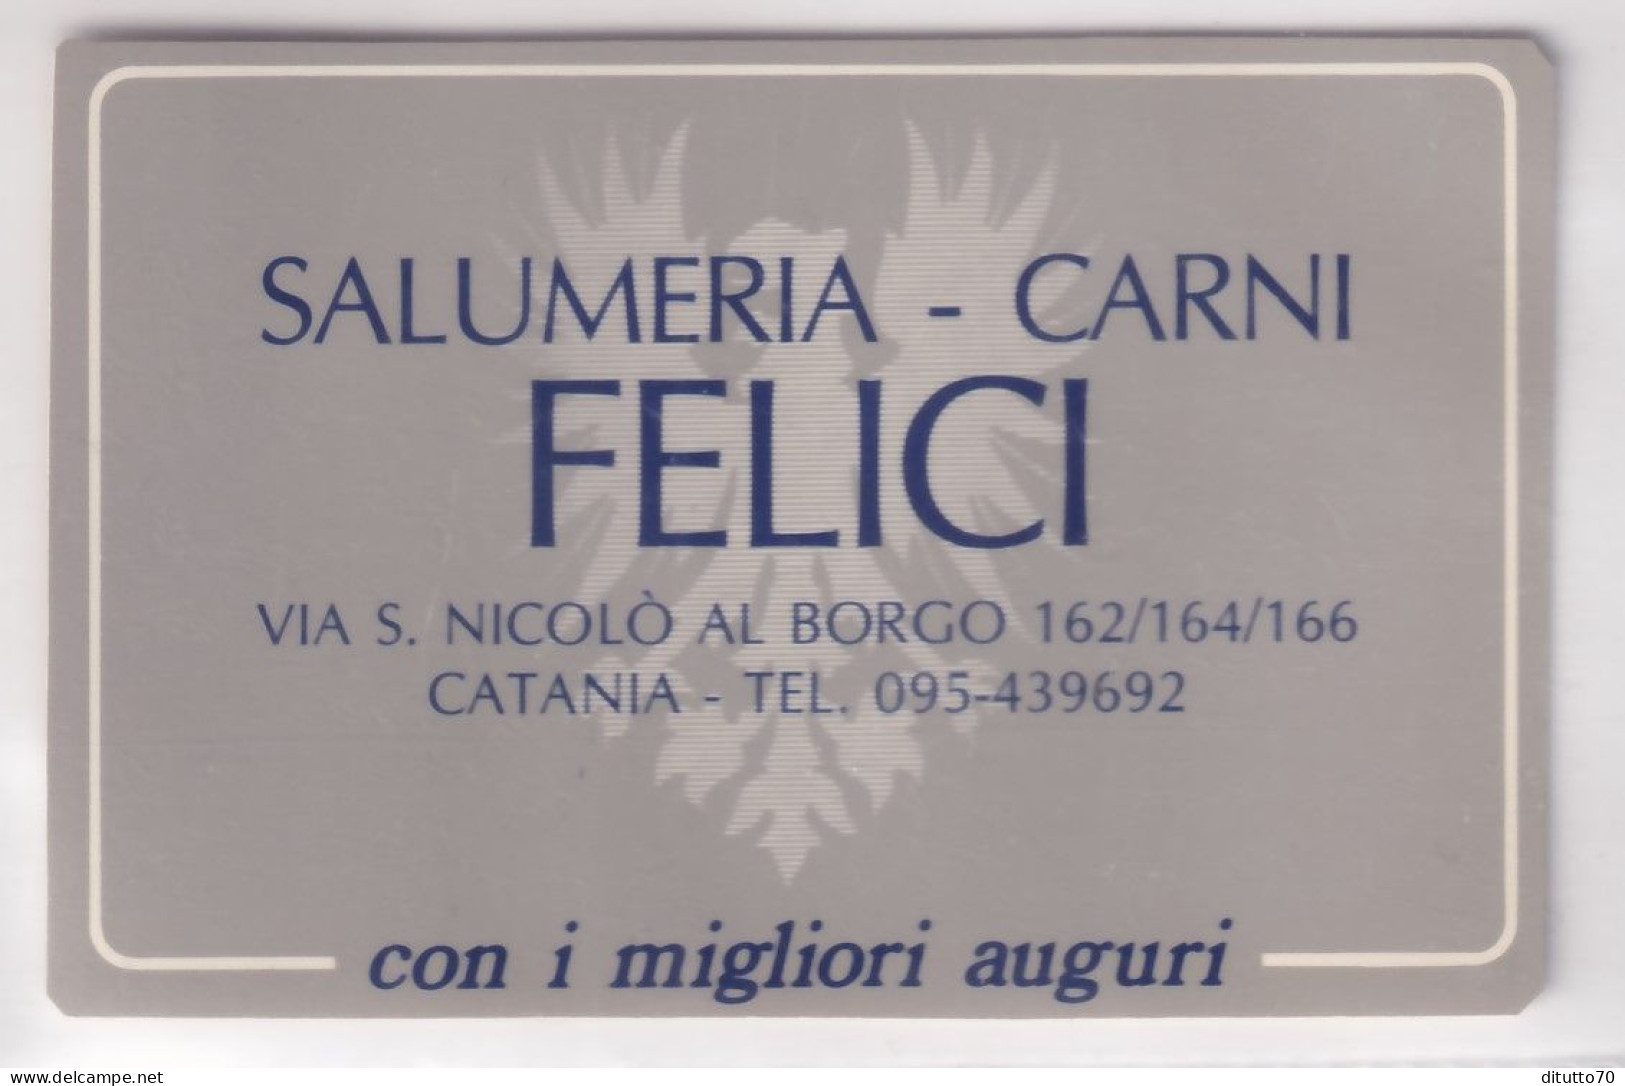 Calendarietto - Salumeria - Carni - Felici - Catania - Anno 1986 - Groot Formaat: 1981-90